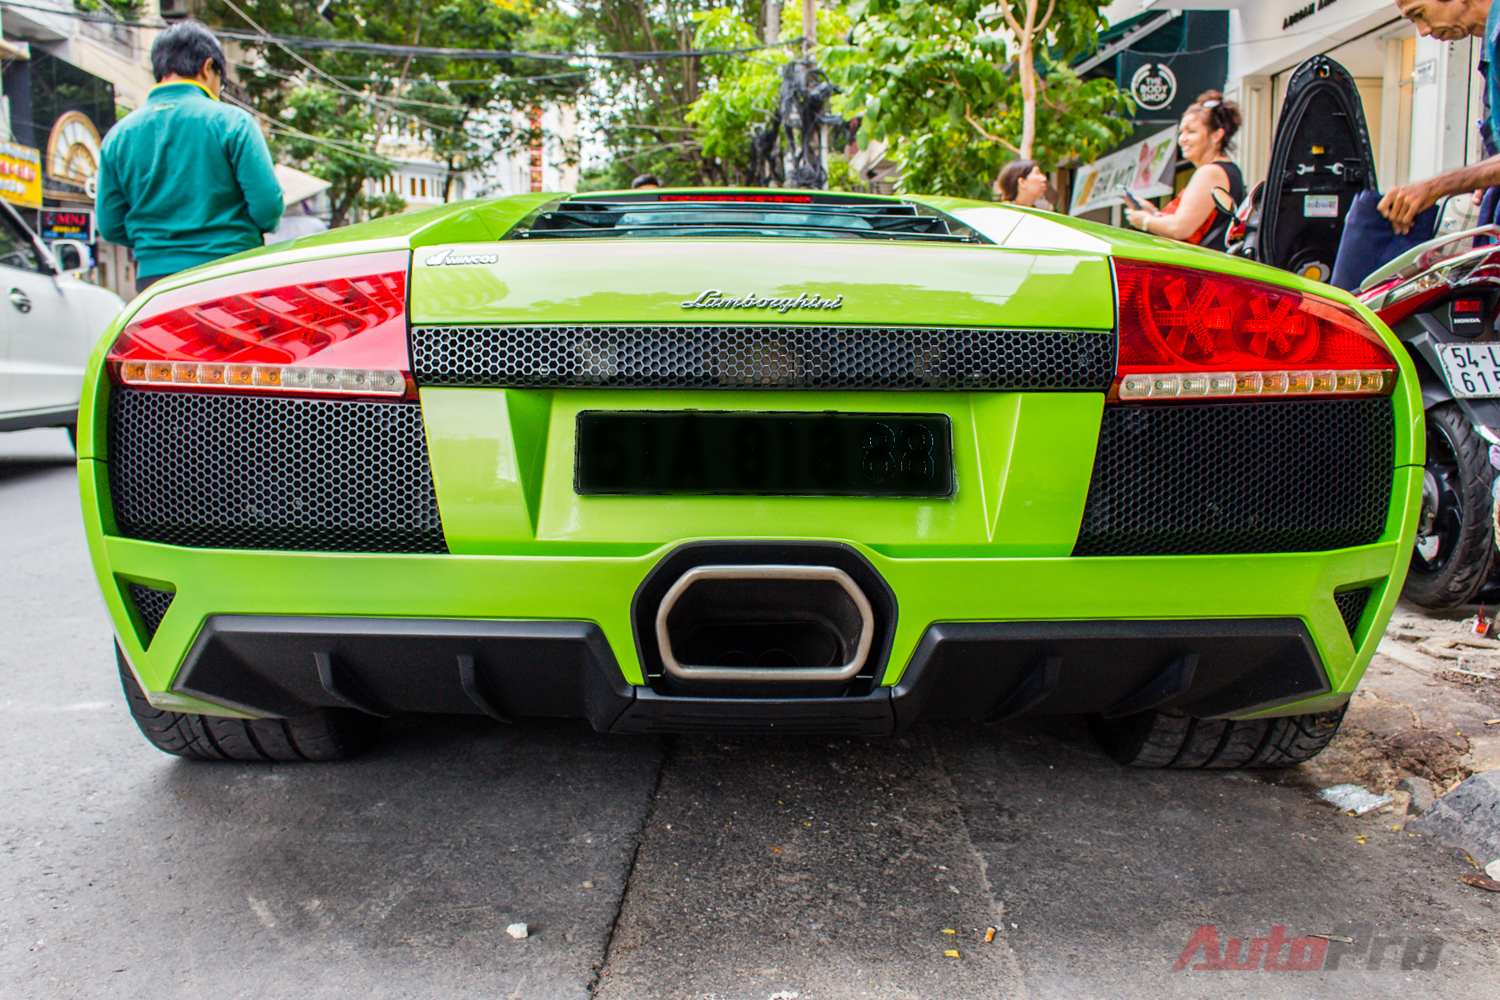 
Giữa năm 2015, nó được chuyển vào Sài Gòn và nằm chờ tại showroom bán xe sang tư nhân. Cuộc mua đi, bán lại tạm thời khép lại với kết cục Lamborghini Murcielago LP-640 xanh cốm về tay một đại gia ở Sài thành.
